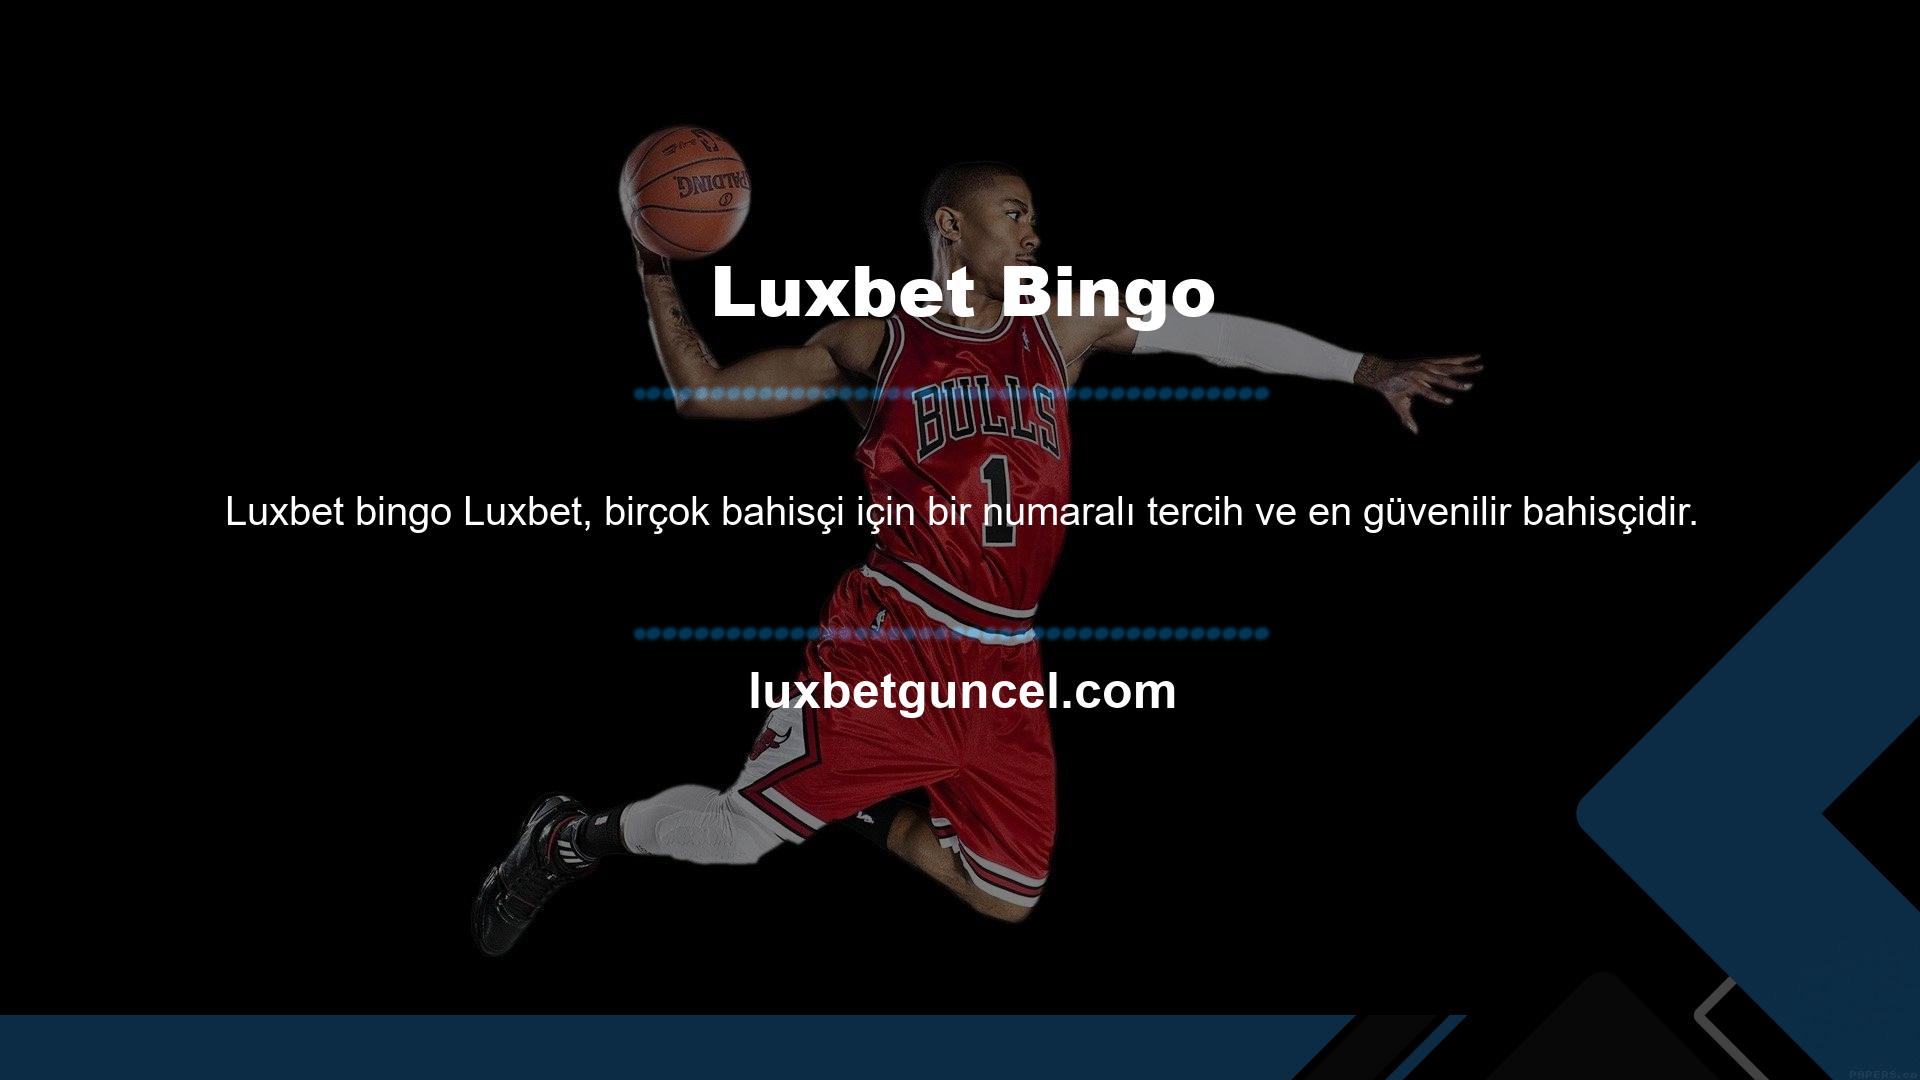 Aynı zamanda Luxbet, kullanıcılarına çok çeşitli casino oyunları da sunmaktadır